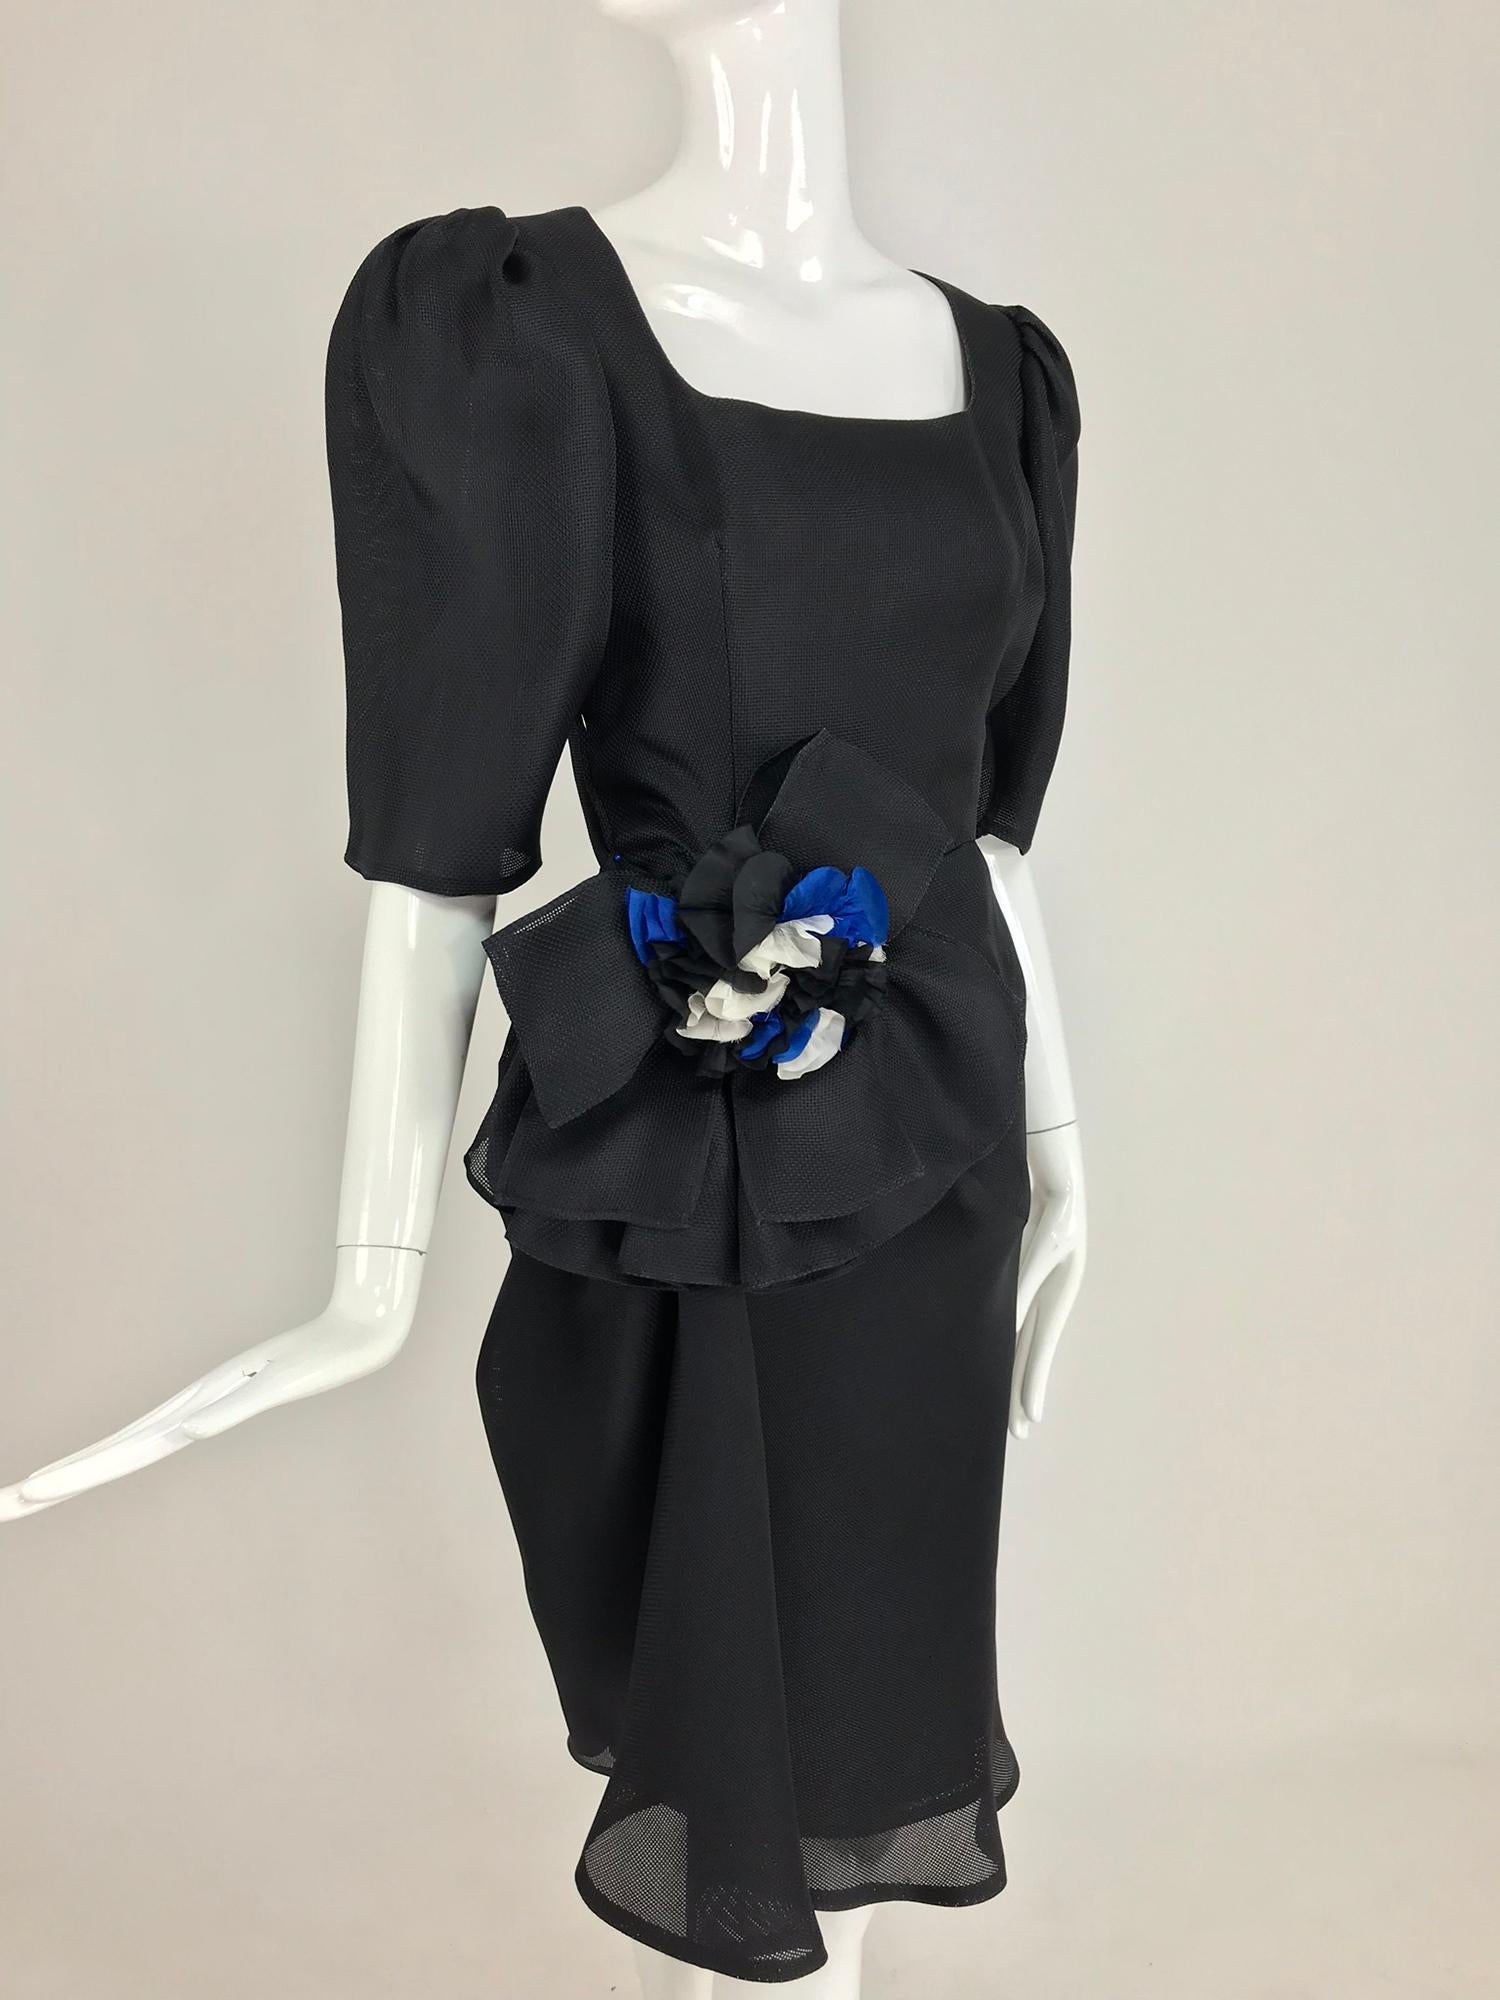 Robe Givency en soie texturée noire avec nœud à la hanche des années 1990. Givenchy a capturé l'essence de Paris dans cette robe, le chic élégant pour lequel les Françaises sont connues.  Créée à partir d'un tissage de soie ouvert, l'encolure est